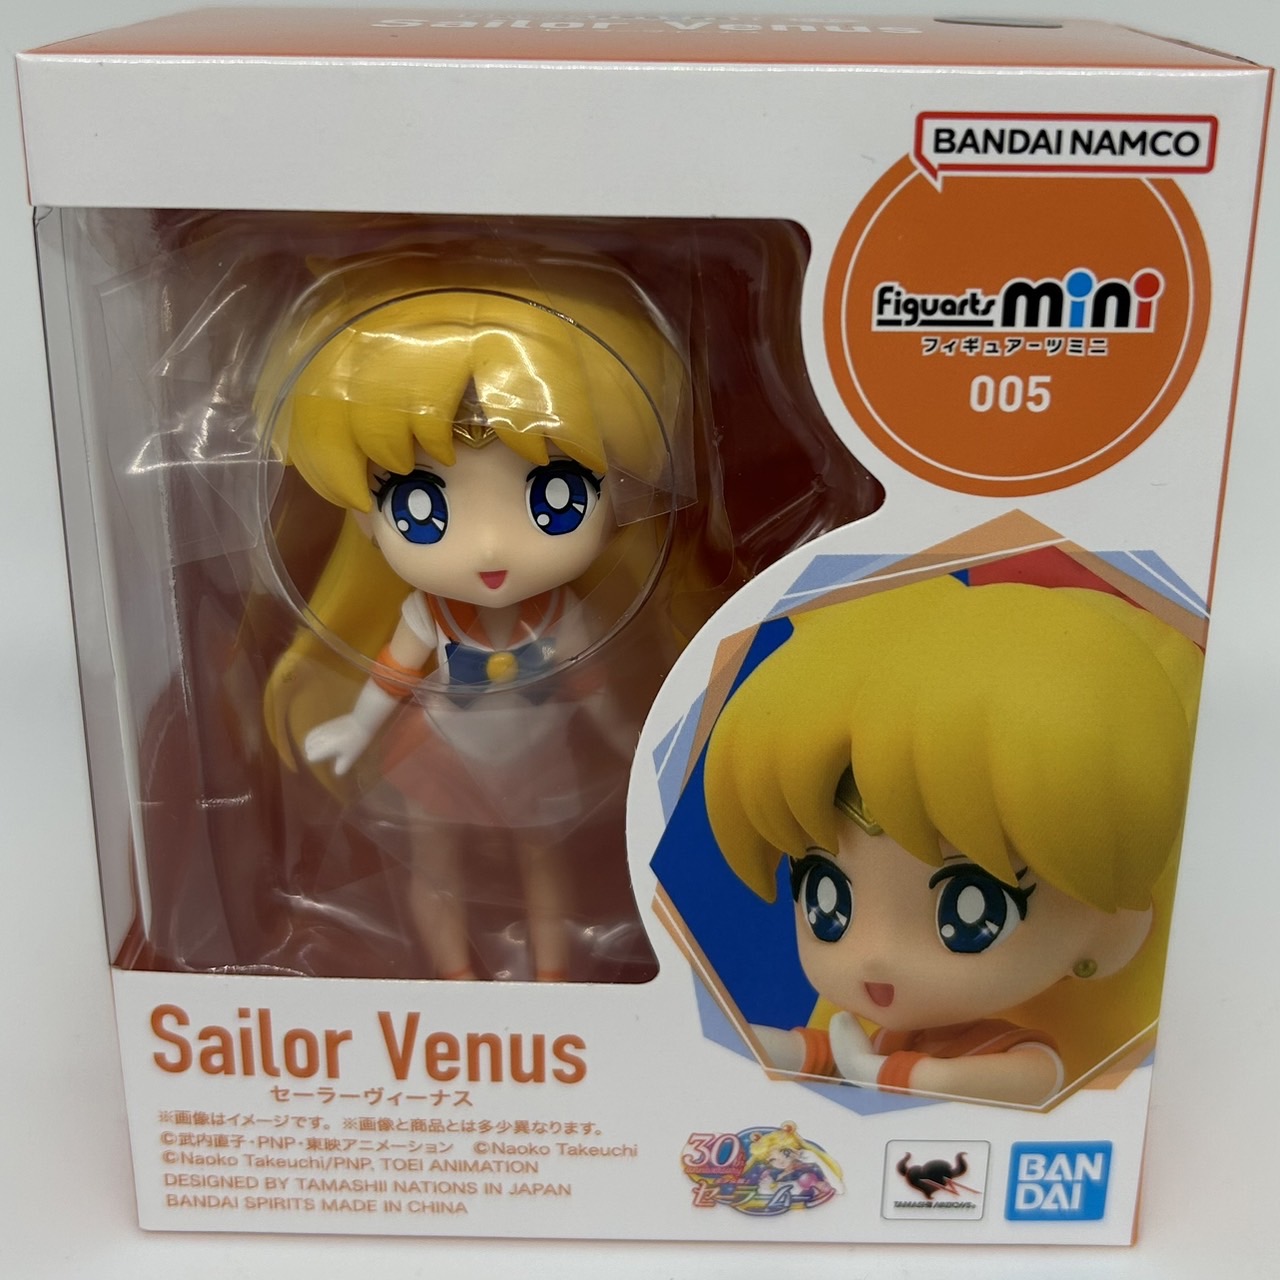 Figuarts mini 005 Sailor Venus